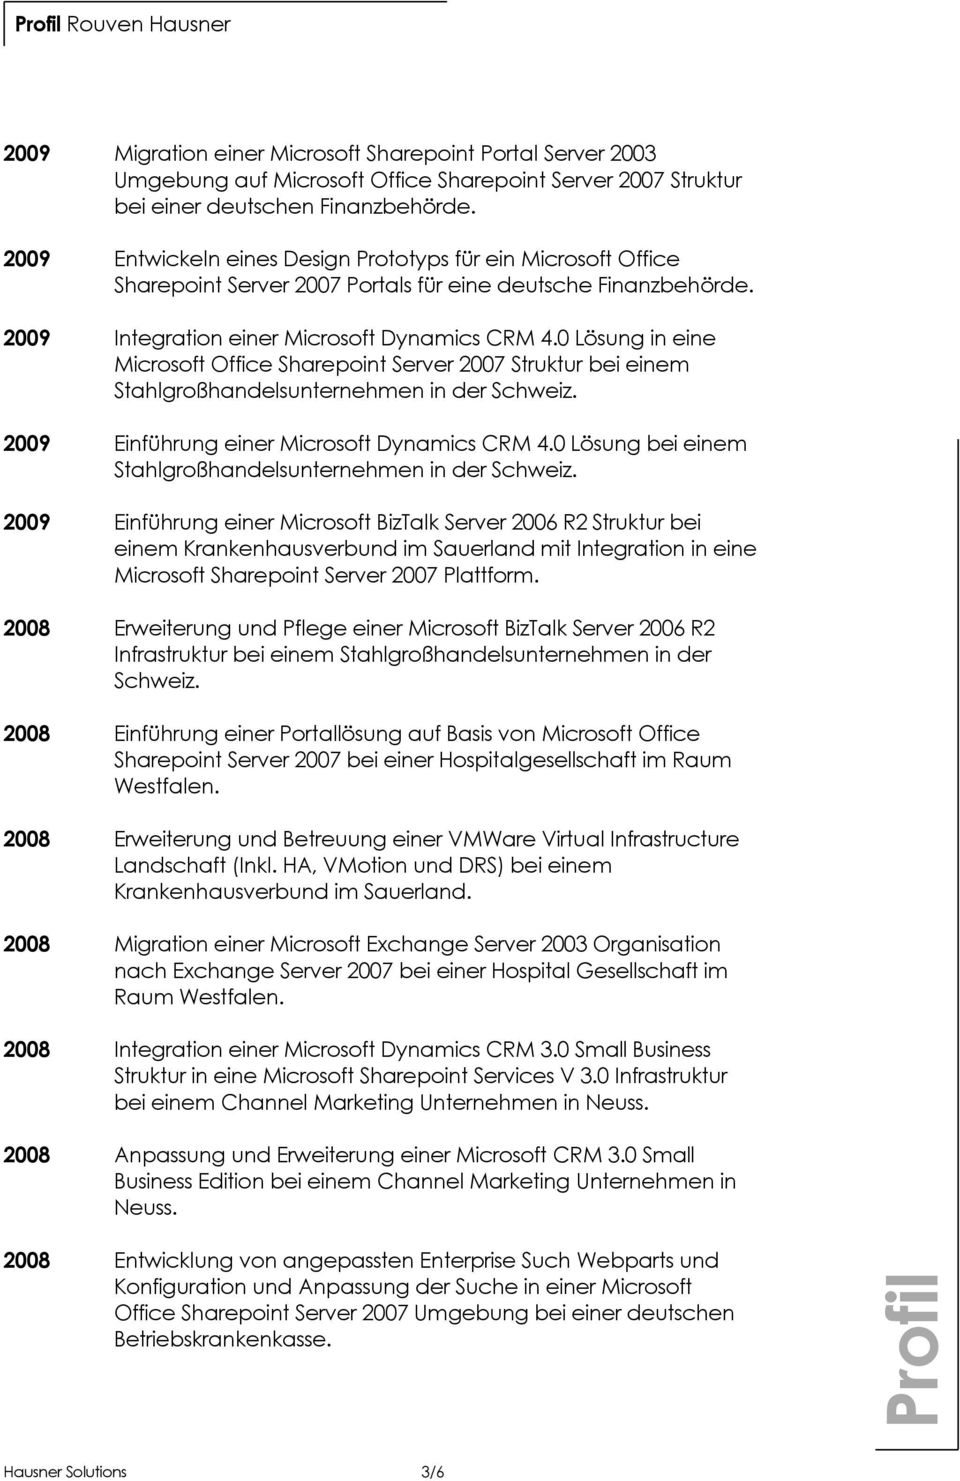 0 Lösung in eine Microsoft Office Sharepoint Server 2007 Struktur bei einem Stahlgroßhandelsunternehmen in der Schweiz. 2009 Einführung einer Microsoft Dynamics CRM 4.